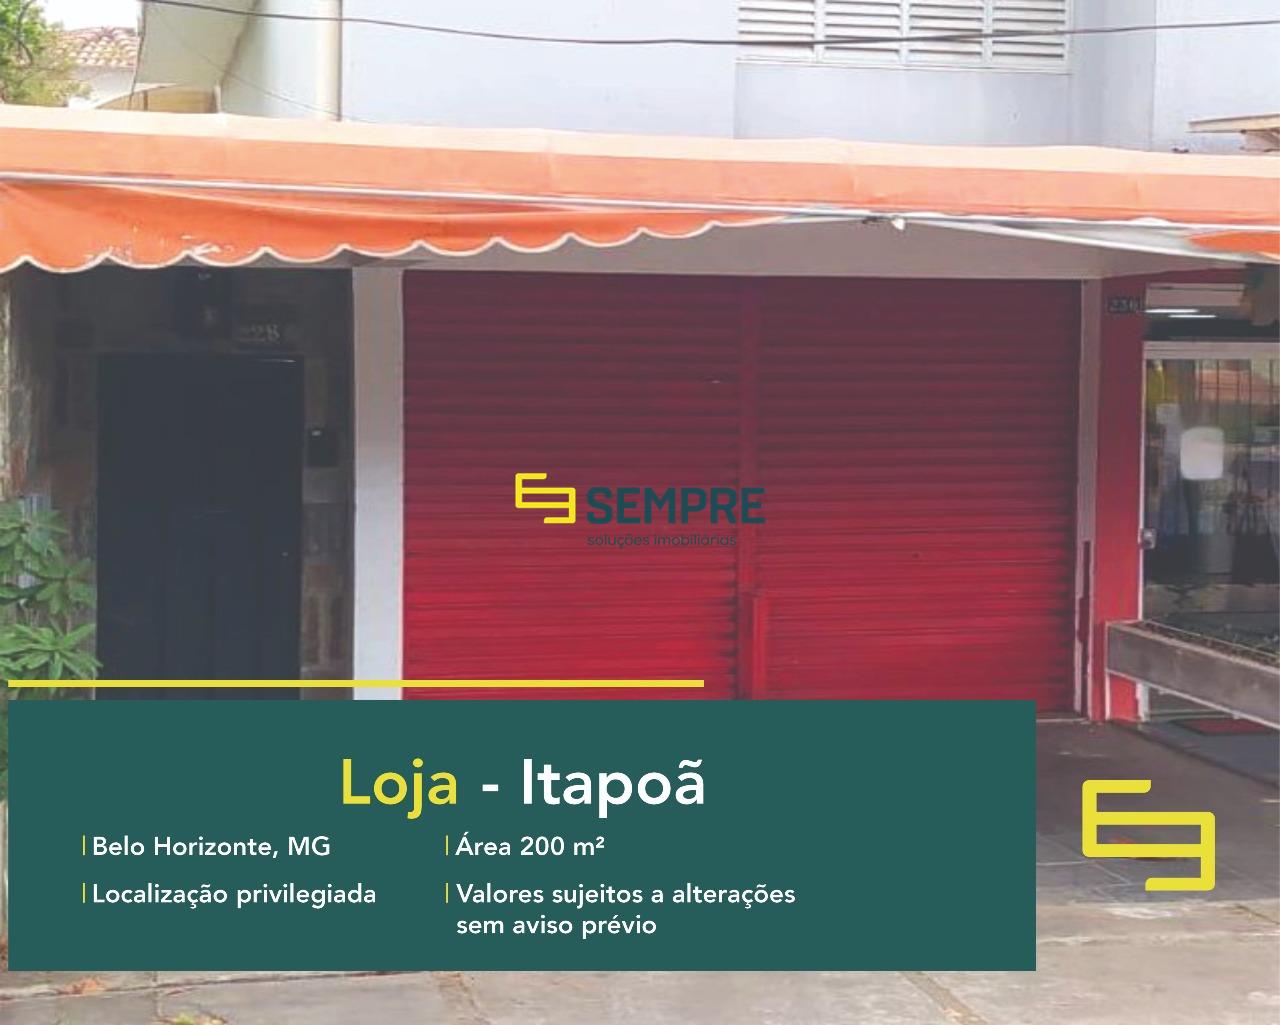 Loja para alugar no Itapoã em Belo Horizonte, excelente localização. O estabelecimento comercial conta, sobretudo, com área de 200 m².